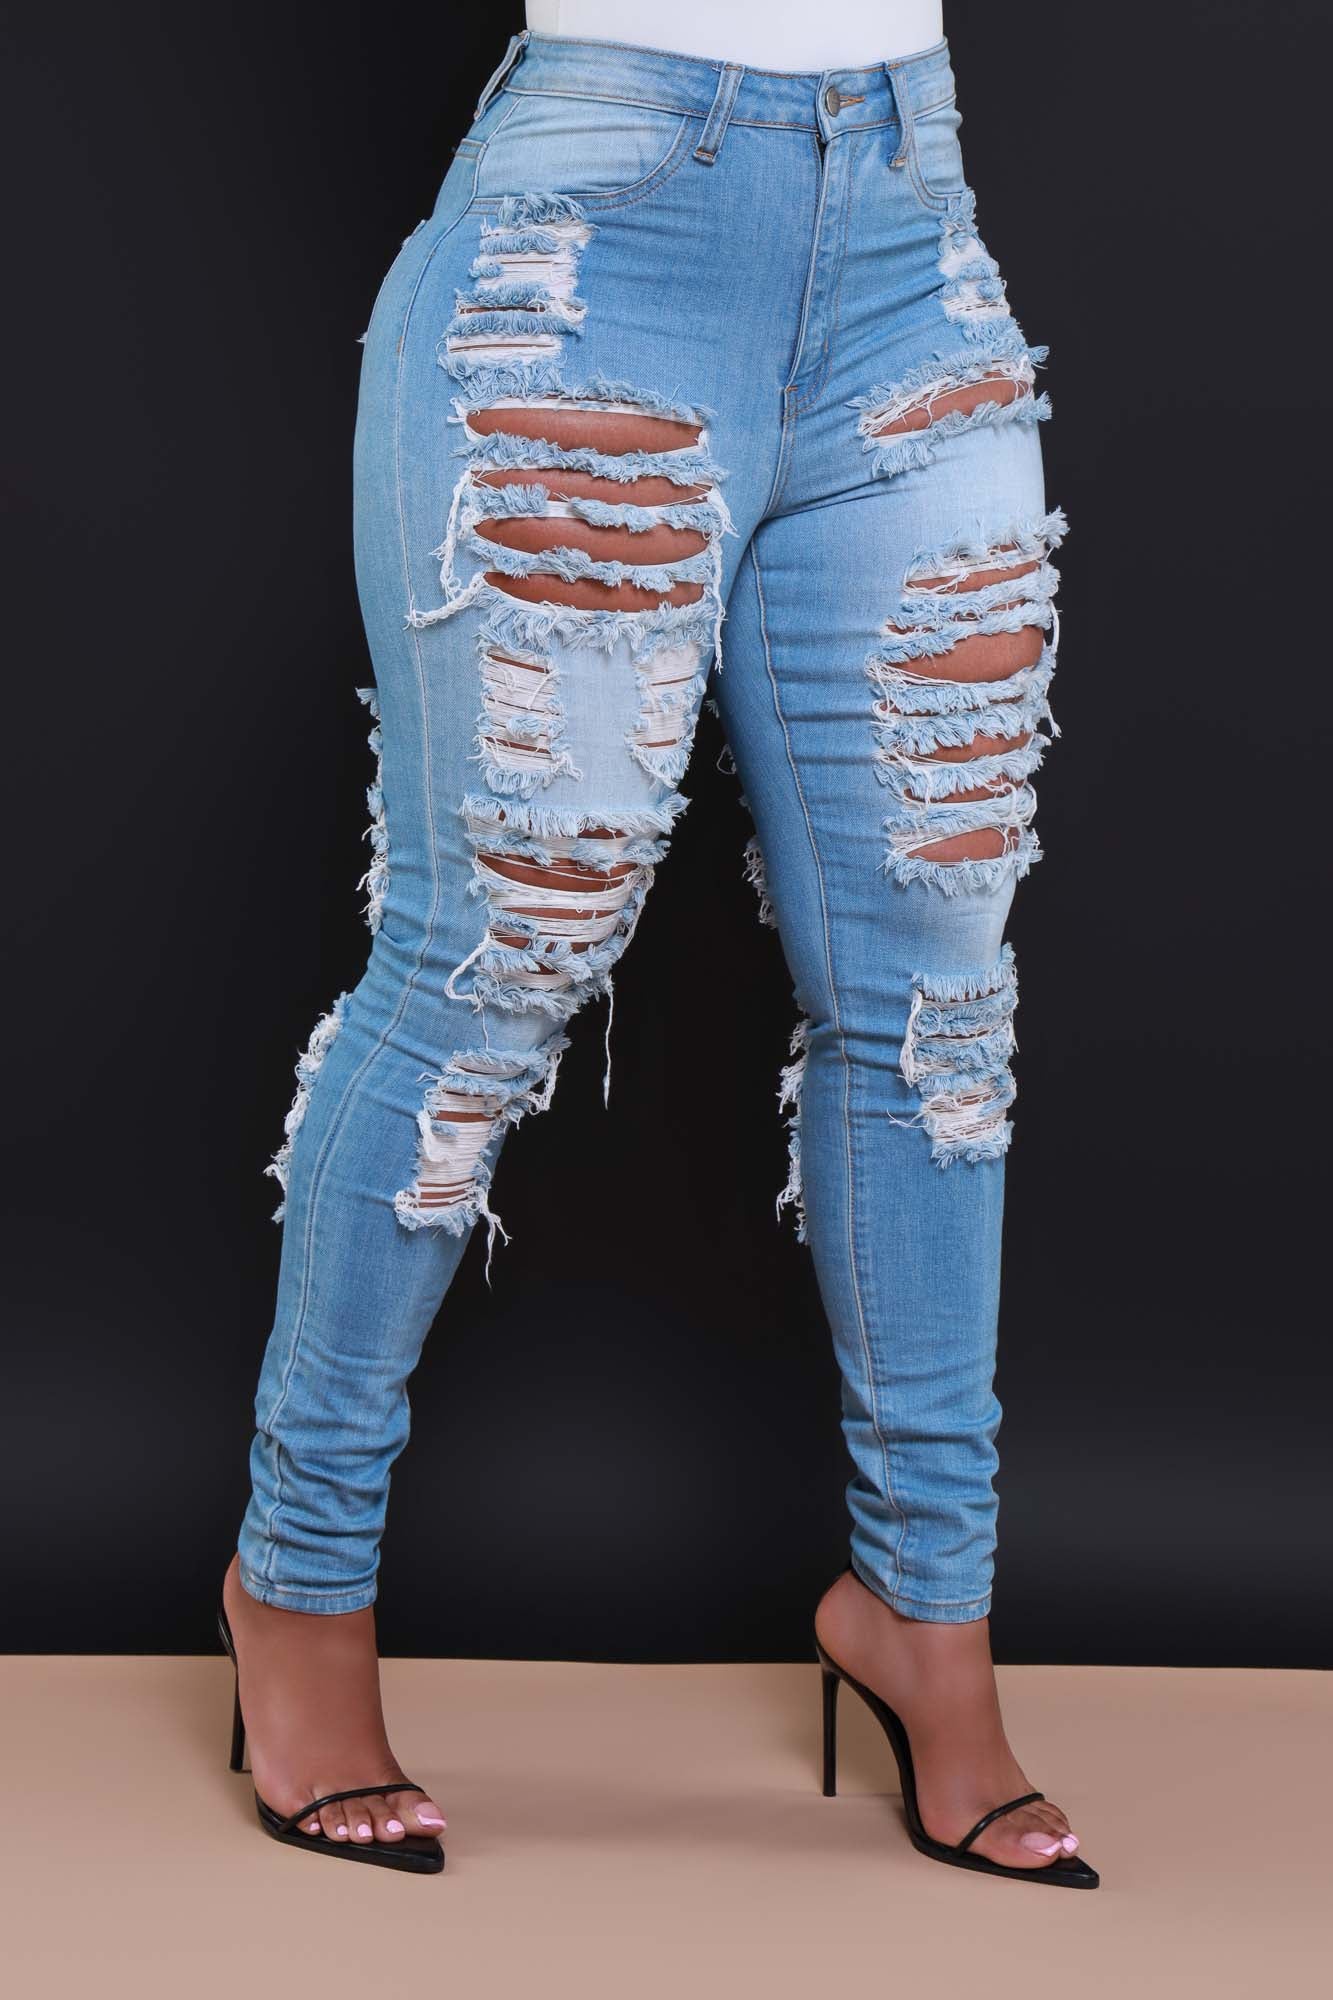 Stylish & Hot pantalon jean mujer at Affordable Prices 